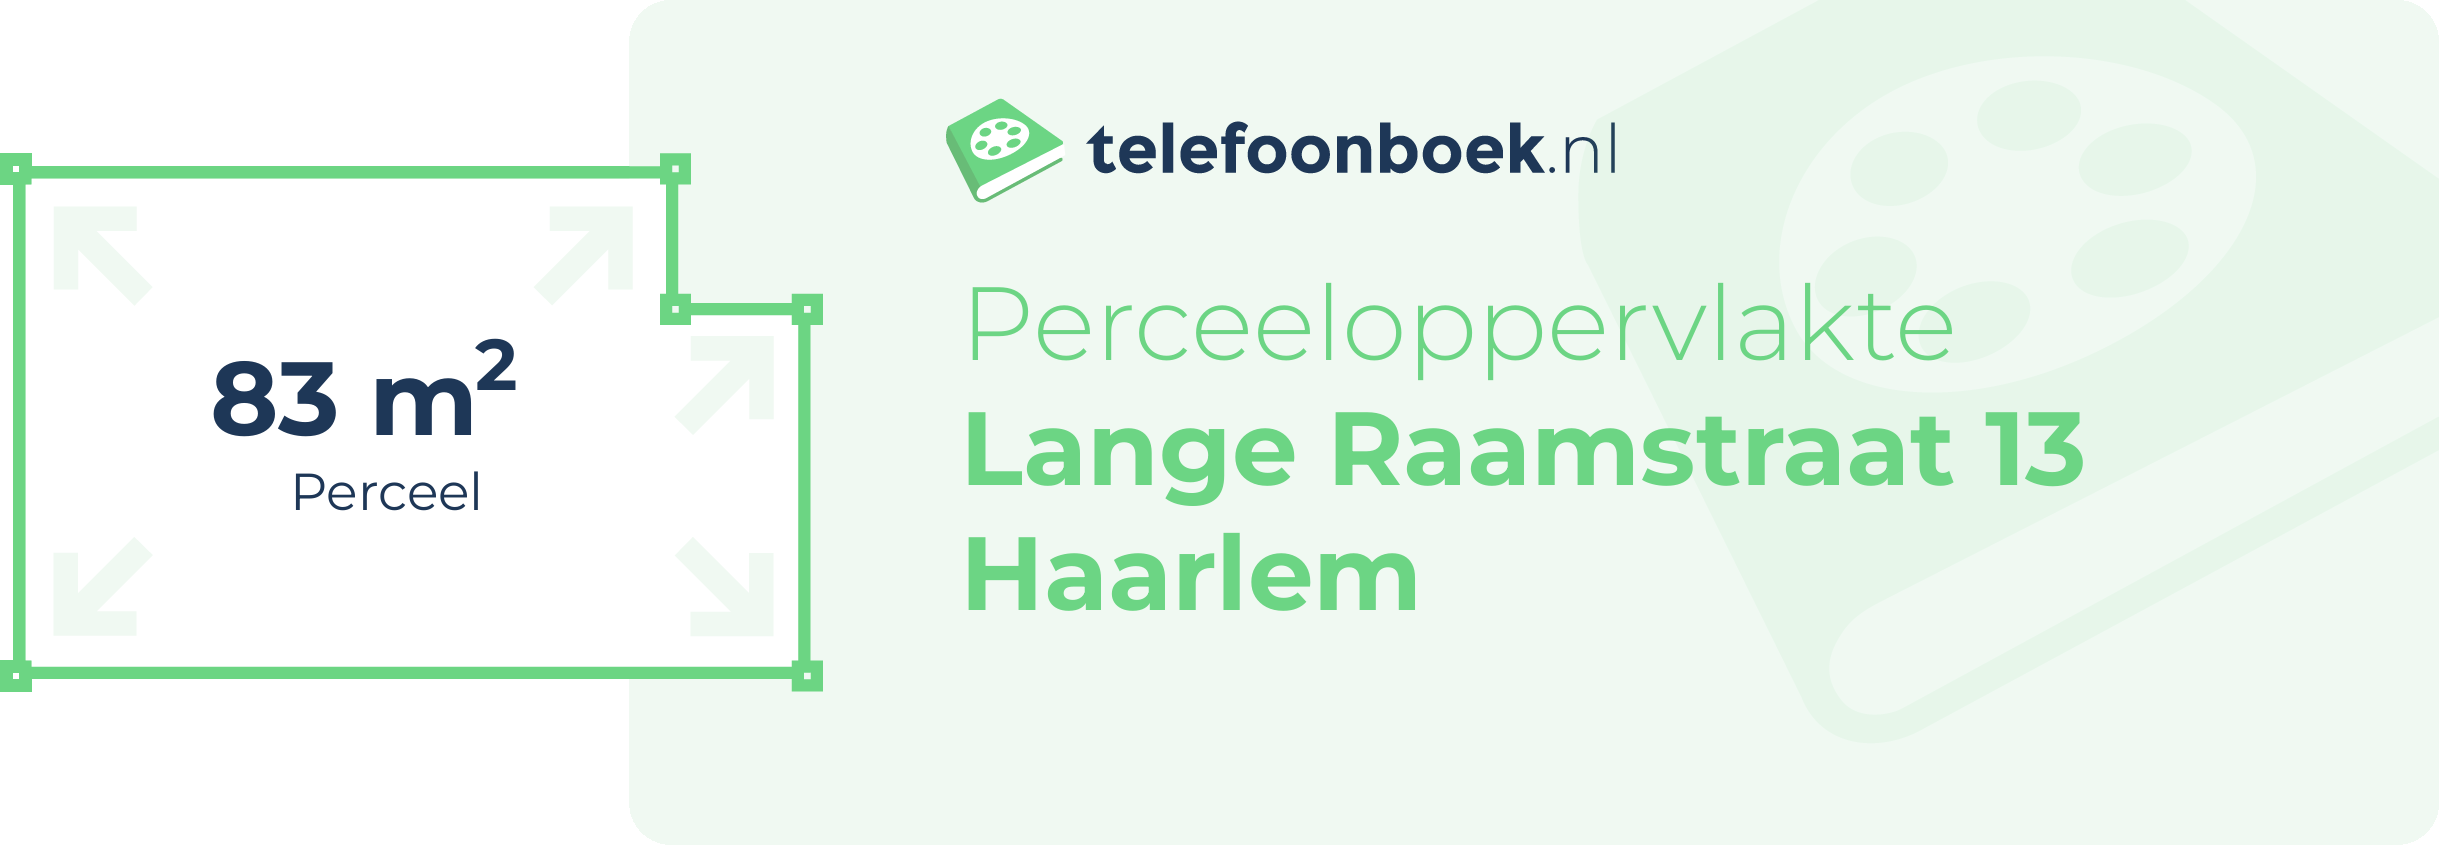 Perceeloppervlakte Lange Raamstraat 13 Haarlem